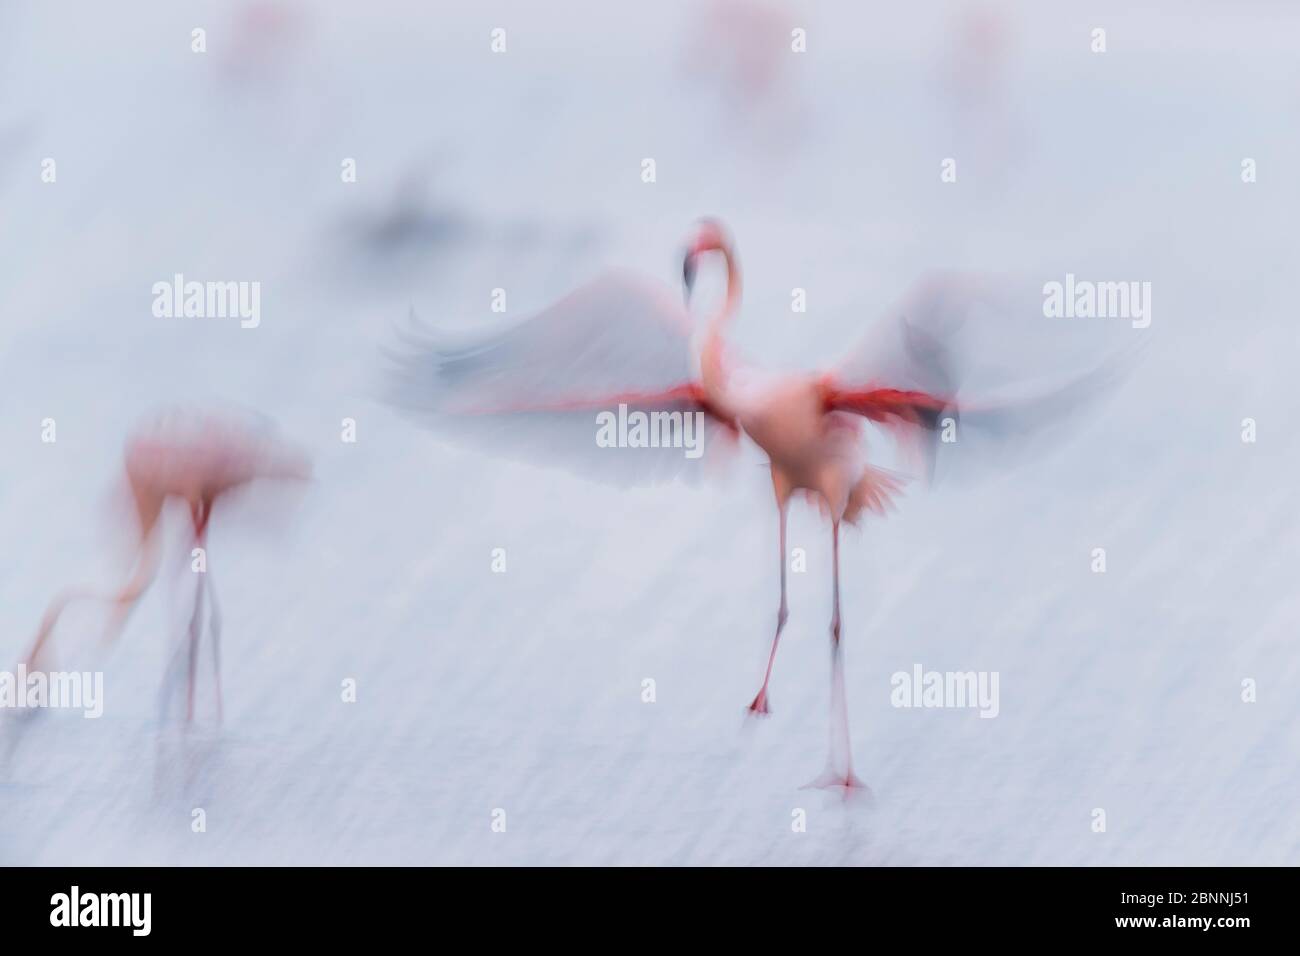 Europäischer Flamingo, großer Flamingo, Phoenicopterus roseus, bei Sonnenaufgang im Flug, Long Exposure, Saintes-Maries-de-la-Mer, Parc naturel régional de Camargue, Languedoc Roussillon, Frankreich Stockfoto